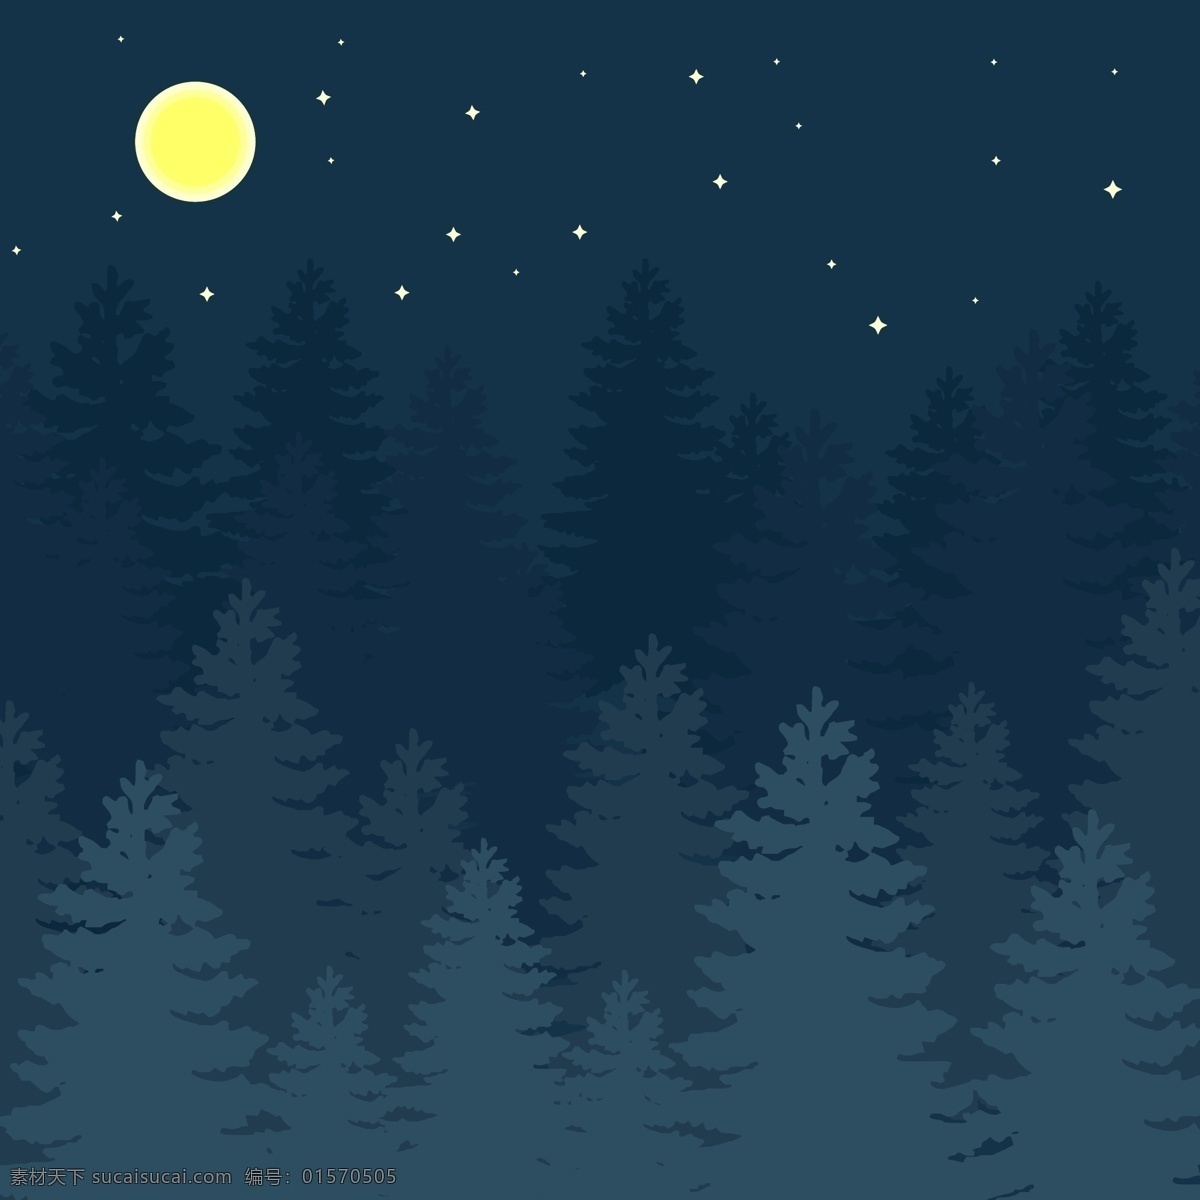 ai格式 森林 矢量素材 手绘森林 手绘树 树木 星空 夜晚 夜晚插画 月亮 矢量 插画